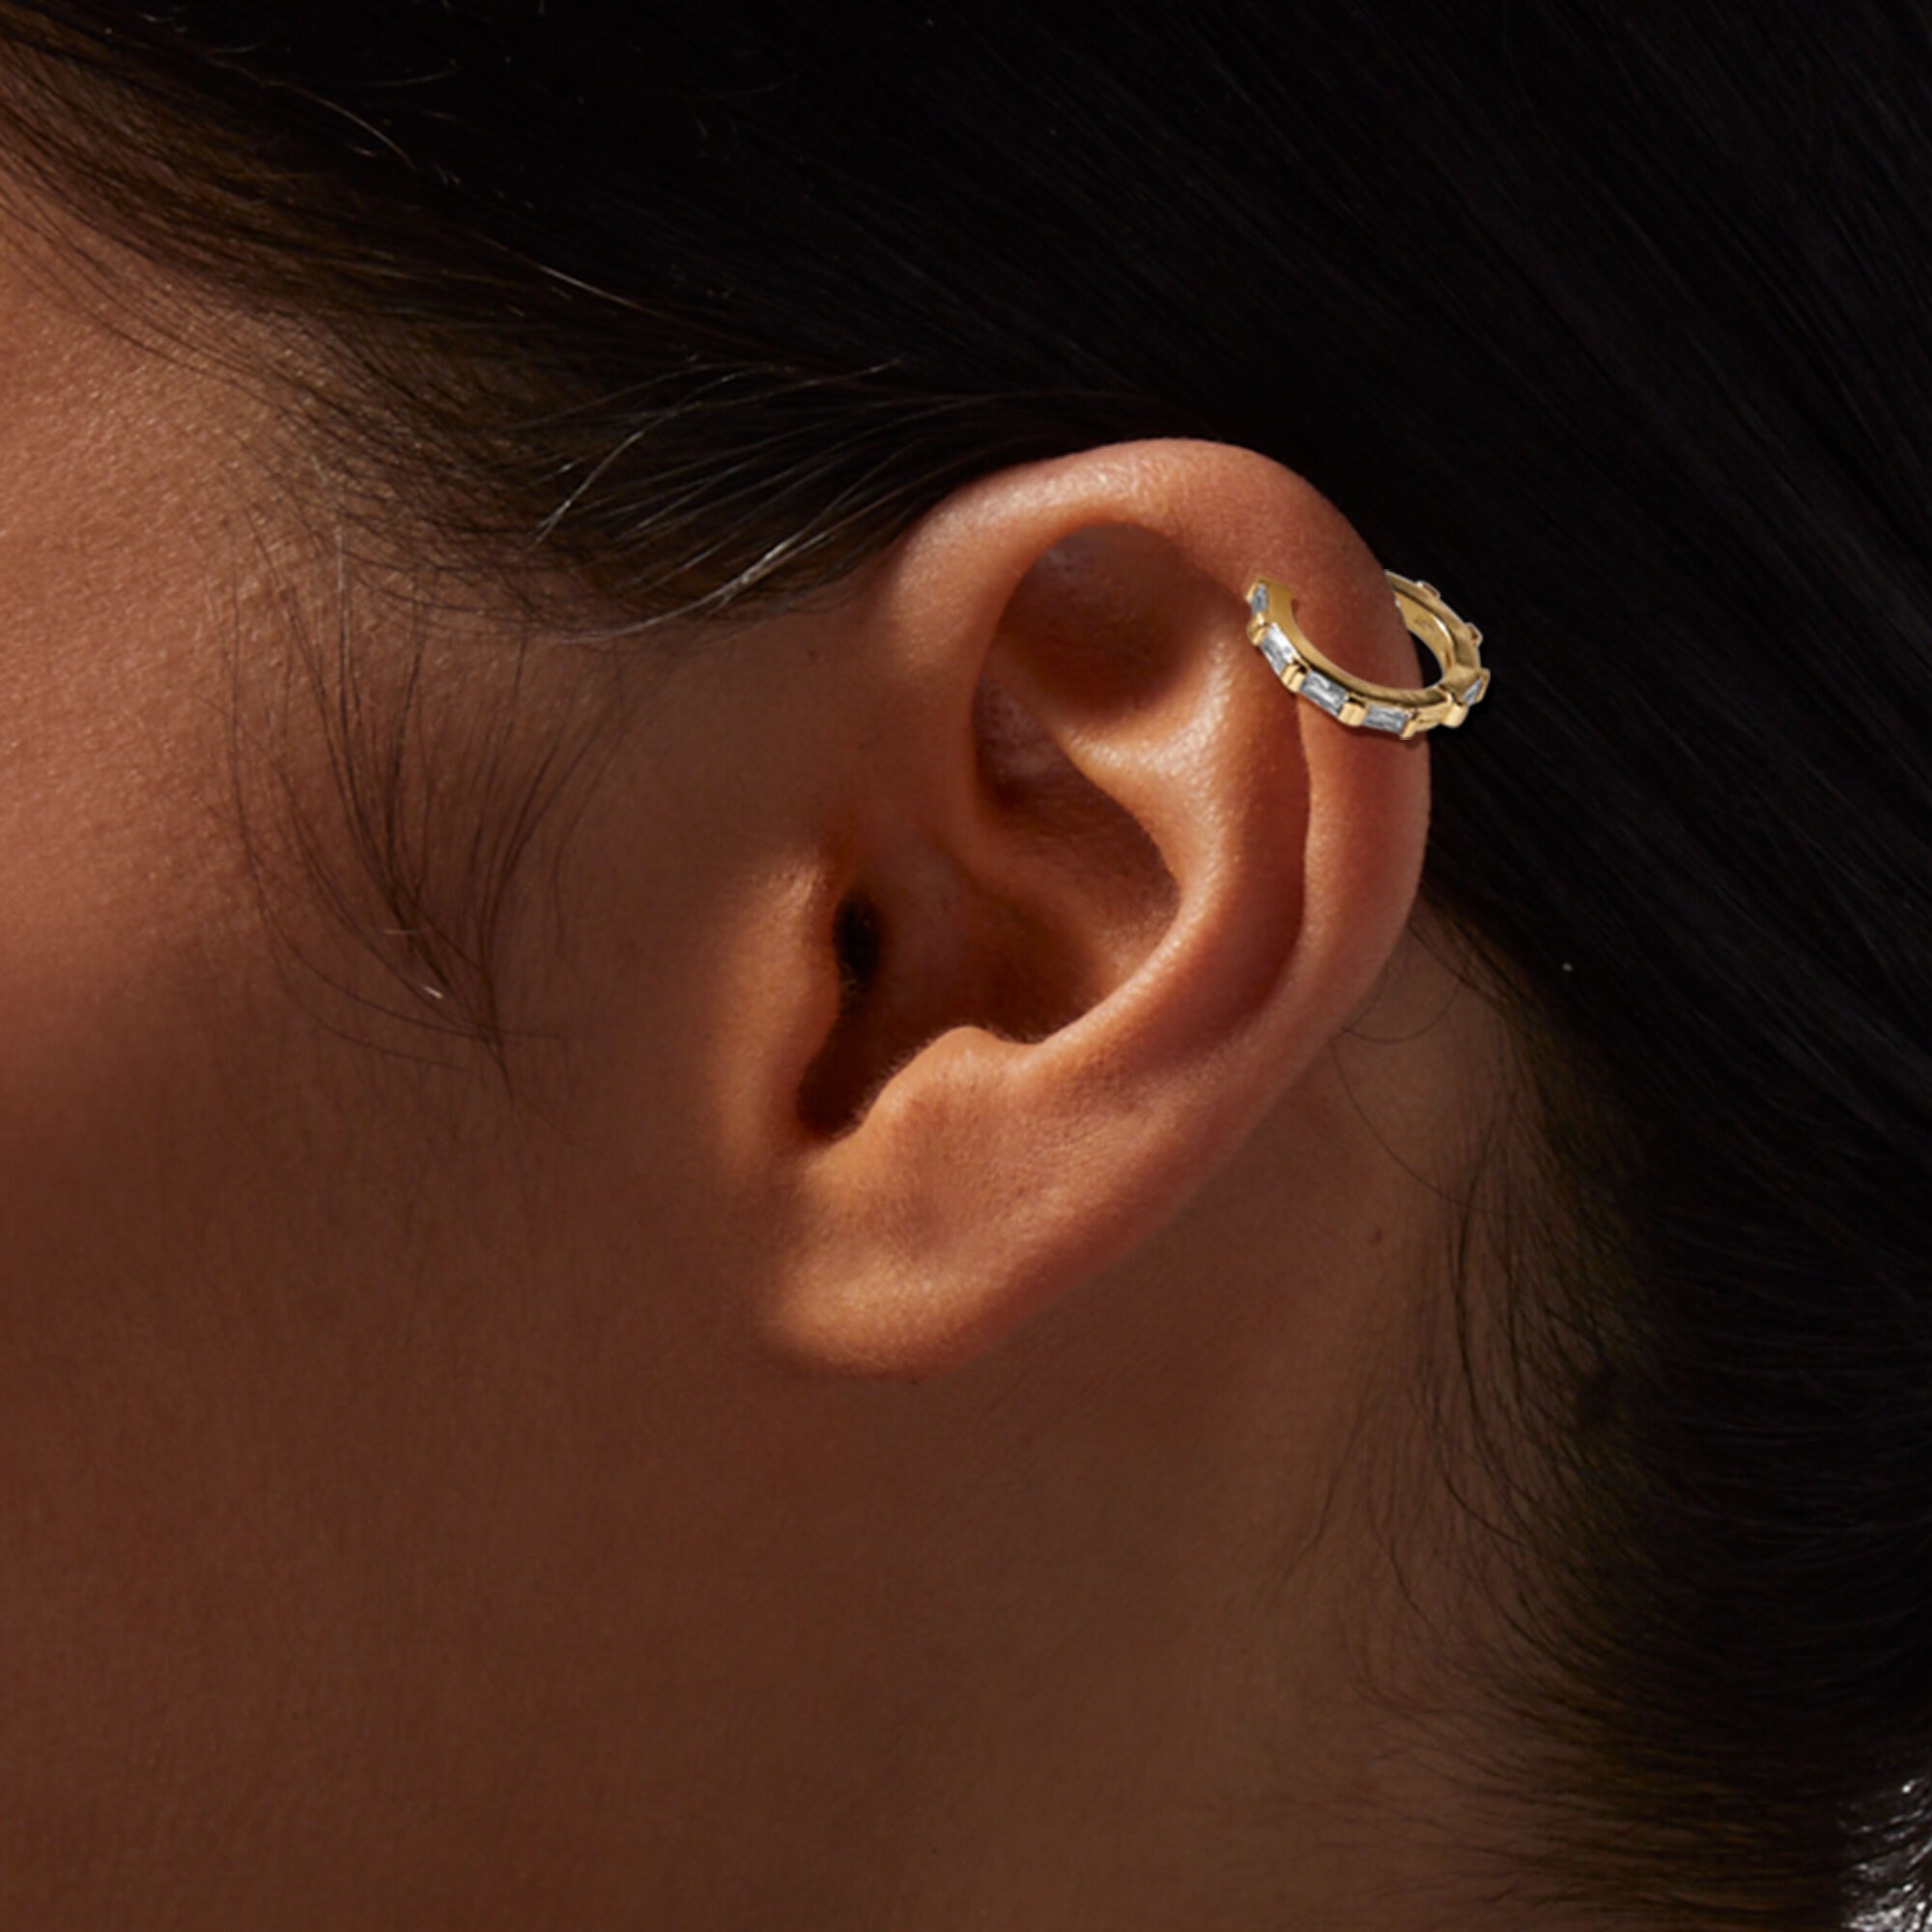 Flipkartcom  Buy KRYSTALZ 3 PAIRS OF CARTILAGE HELIX STAINLESS STEEL HOOP  EARRINGS FOR MENS  WOMENS Metal Hoop Earring Stud Earring Online at Best  Prices in India